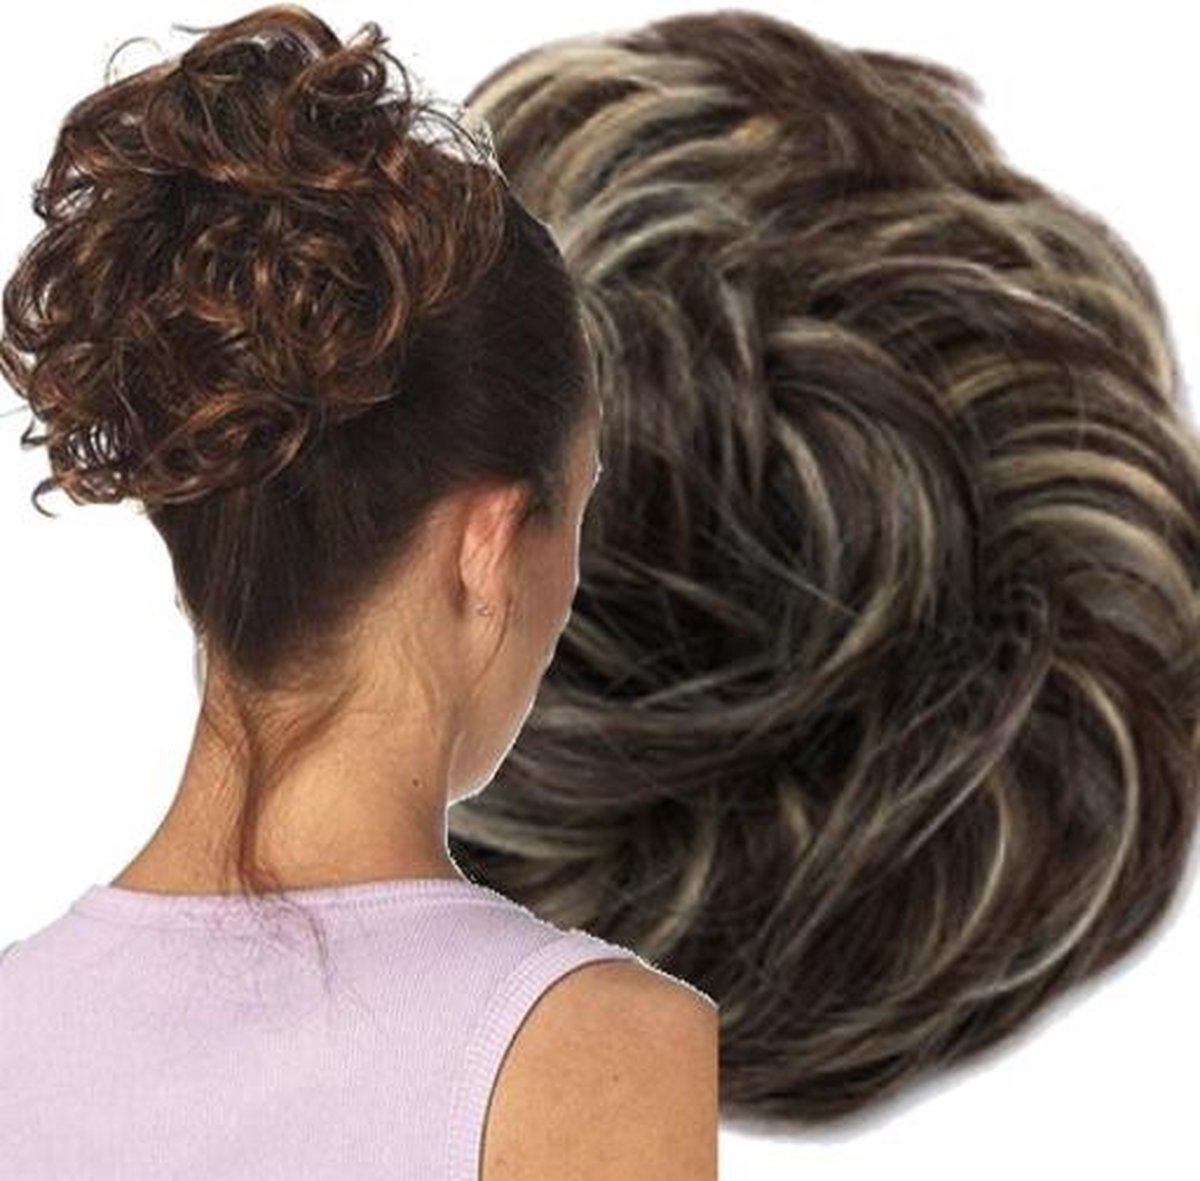 Curly Haar Wrap| Intens Donkerbruin met lichte plukjes | Coupe Soleil  |Inclusief Luxe... | bol.com